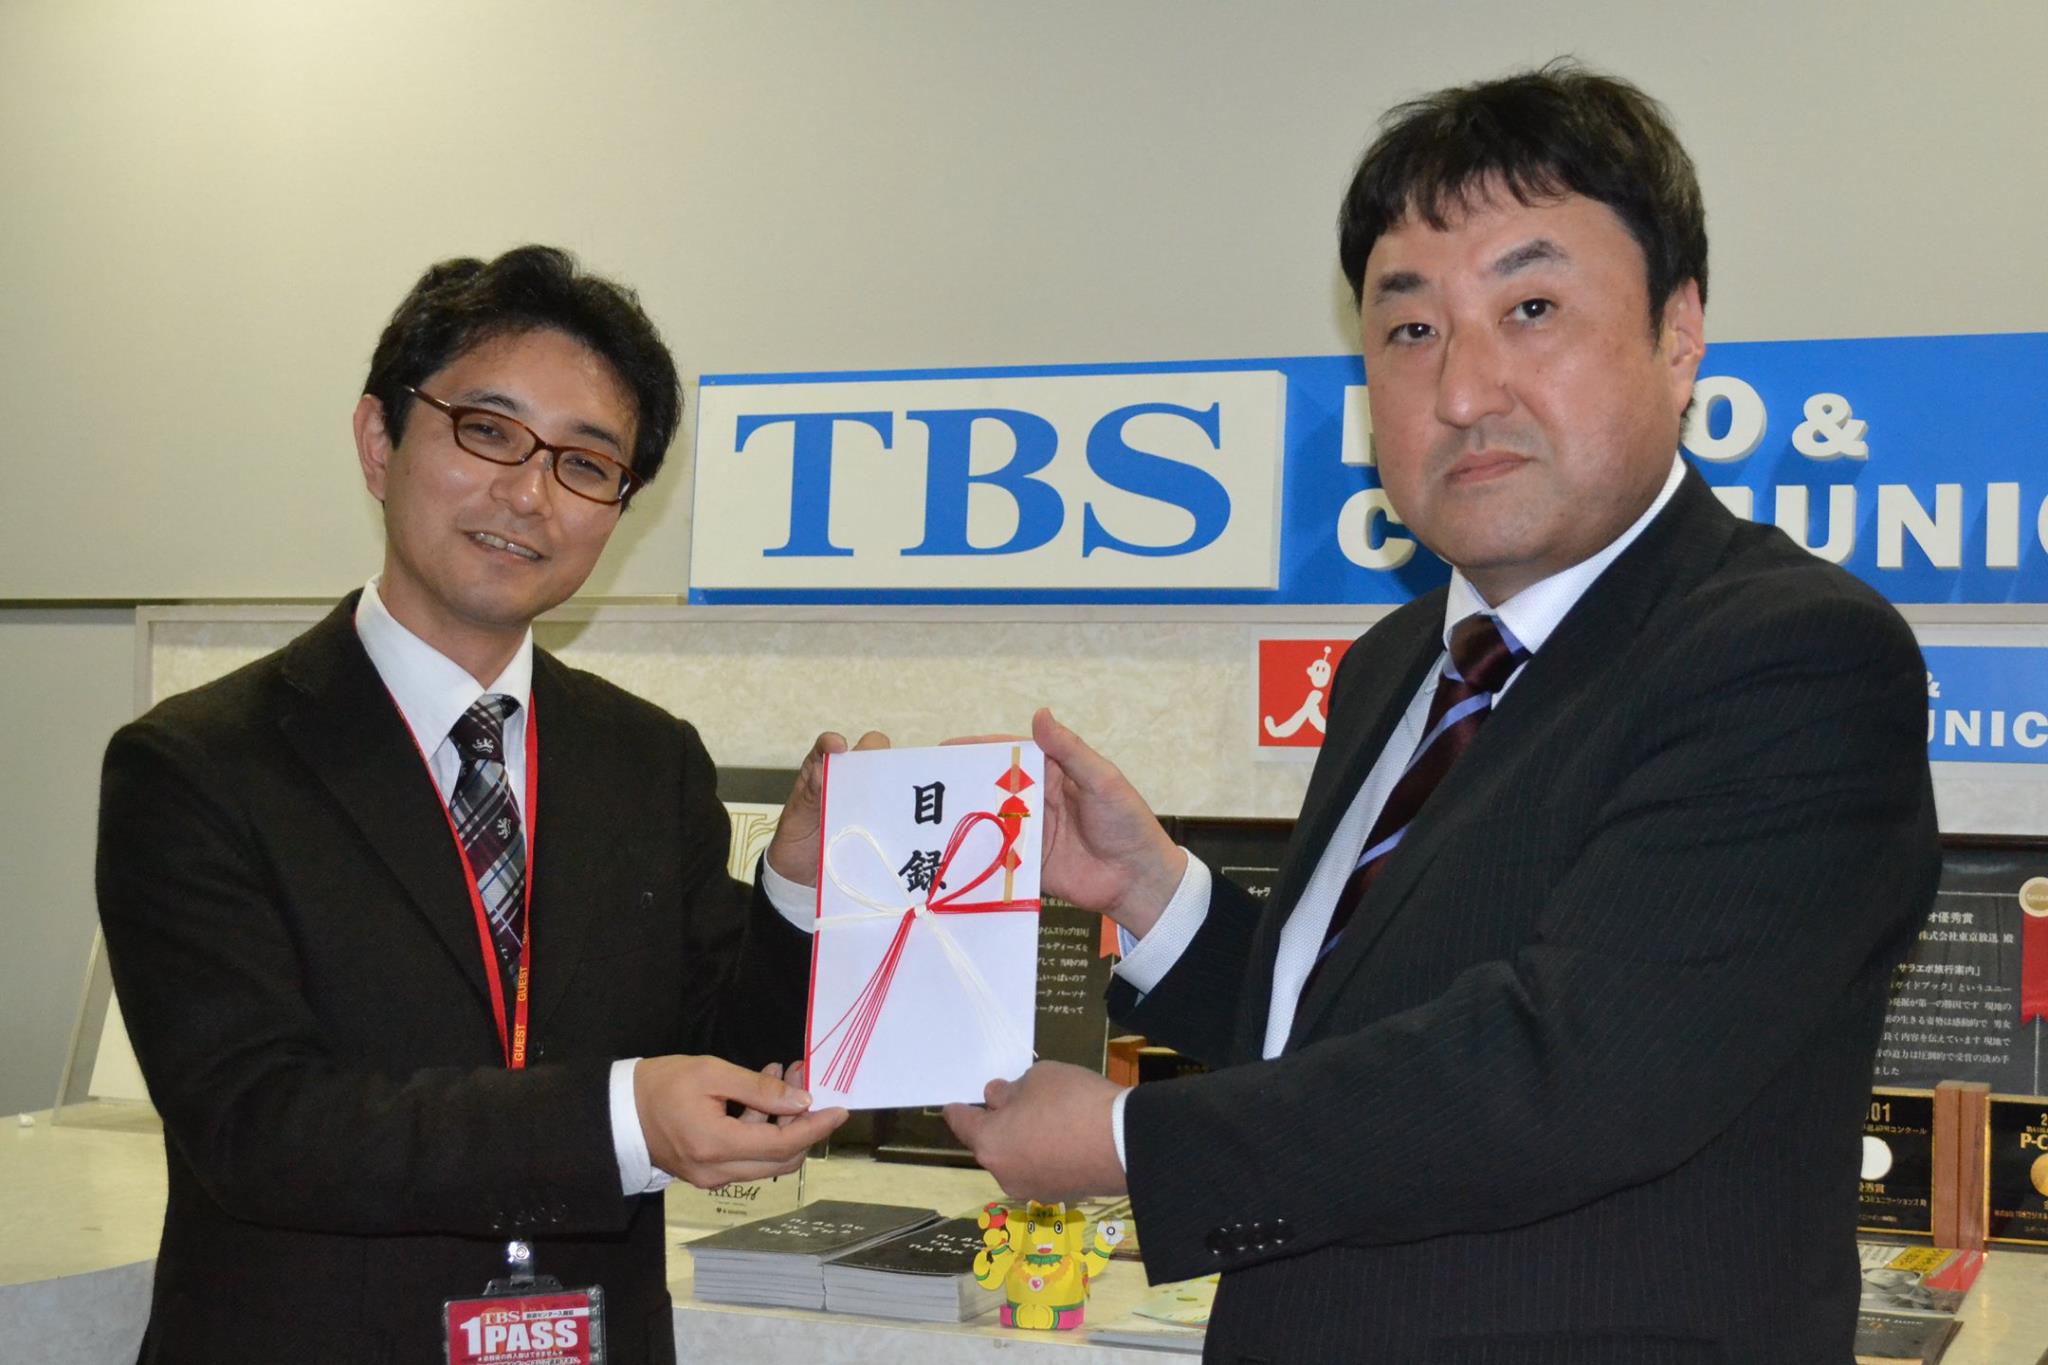 チャリティー書店 Tbsラジオ大感謝祭 での募金を寄付しました お知らせ 嵯峨野株式会社